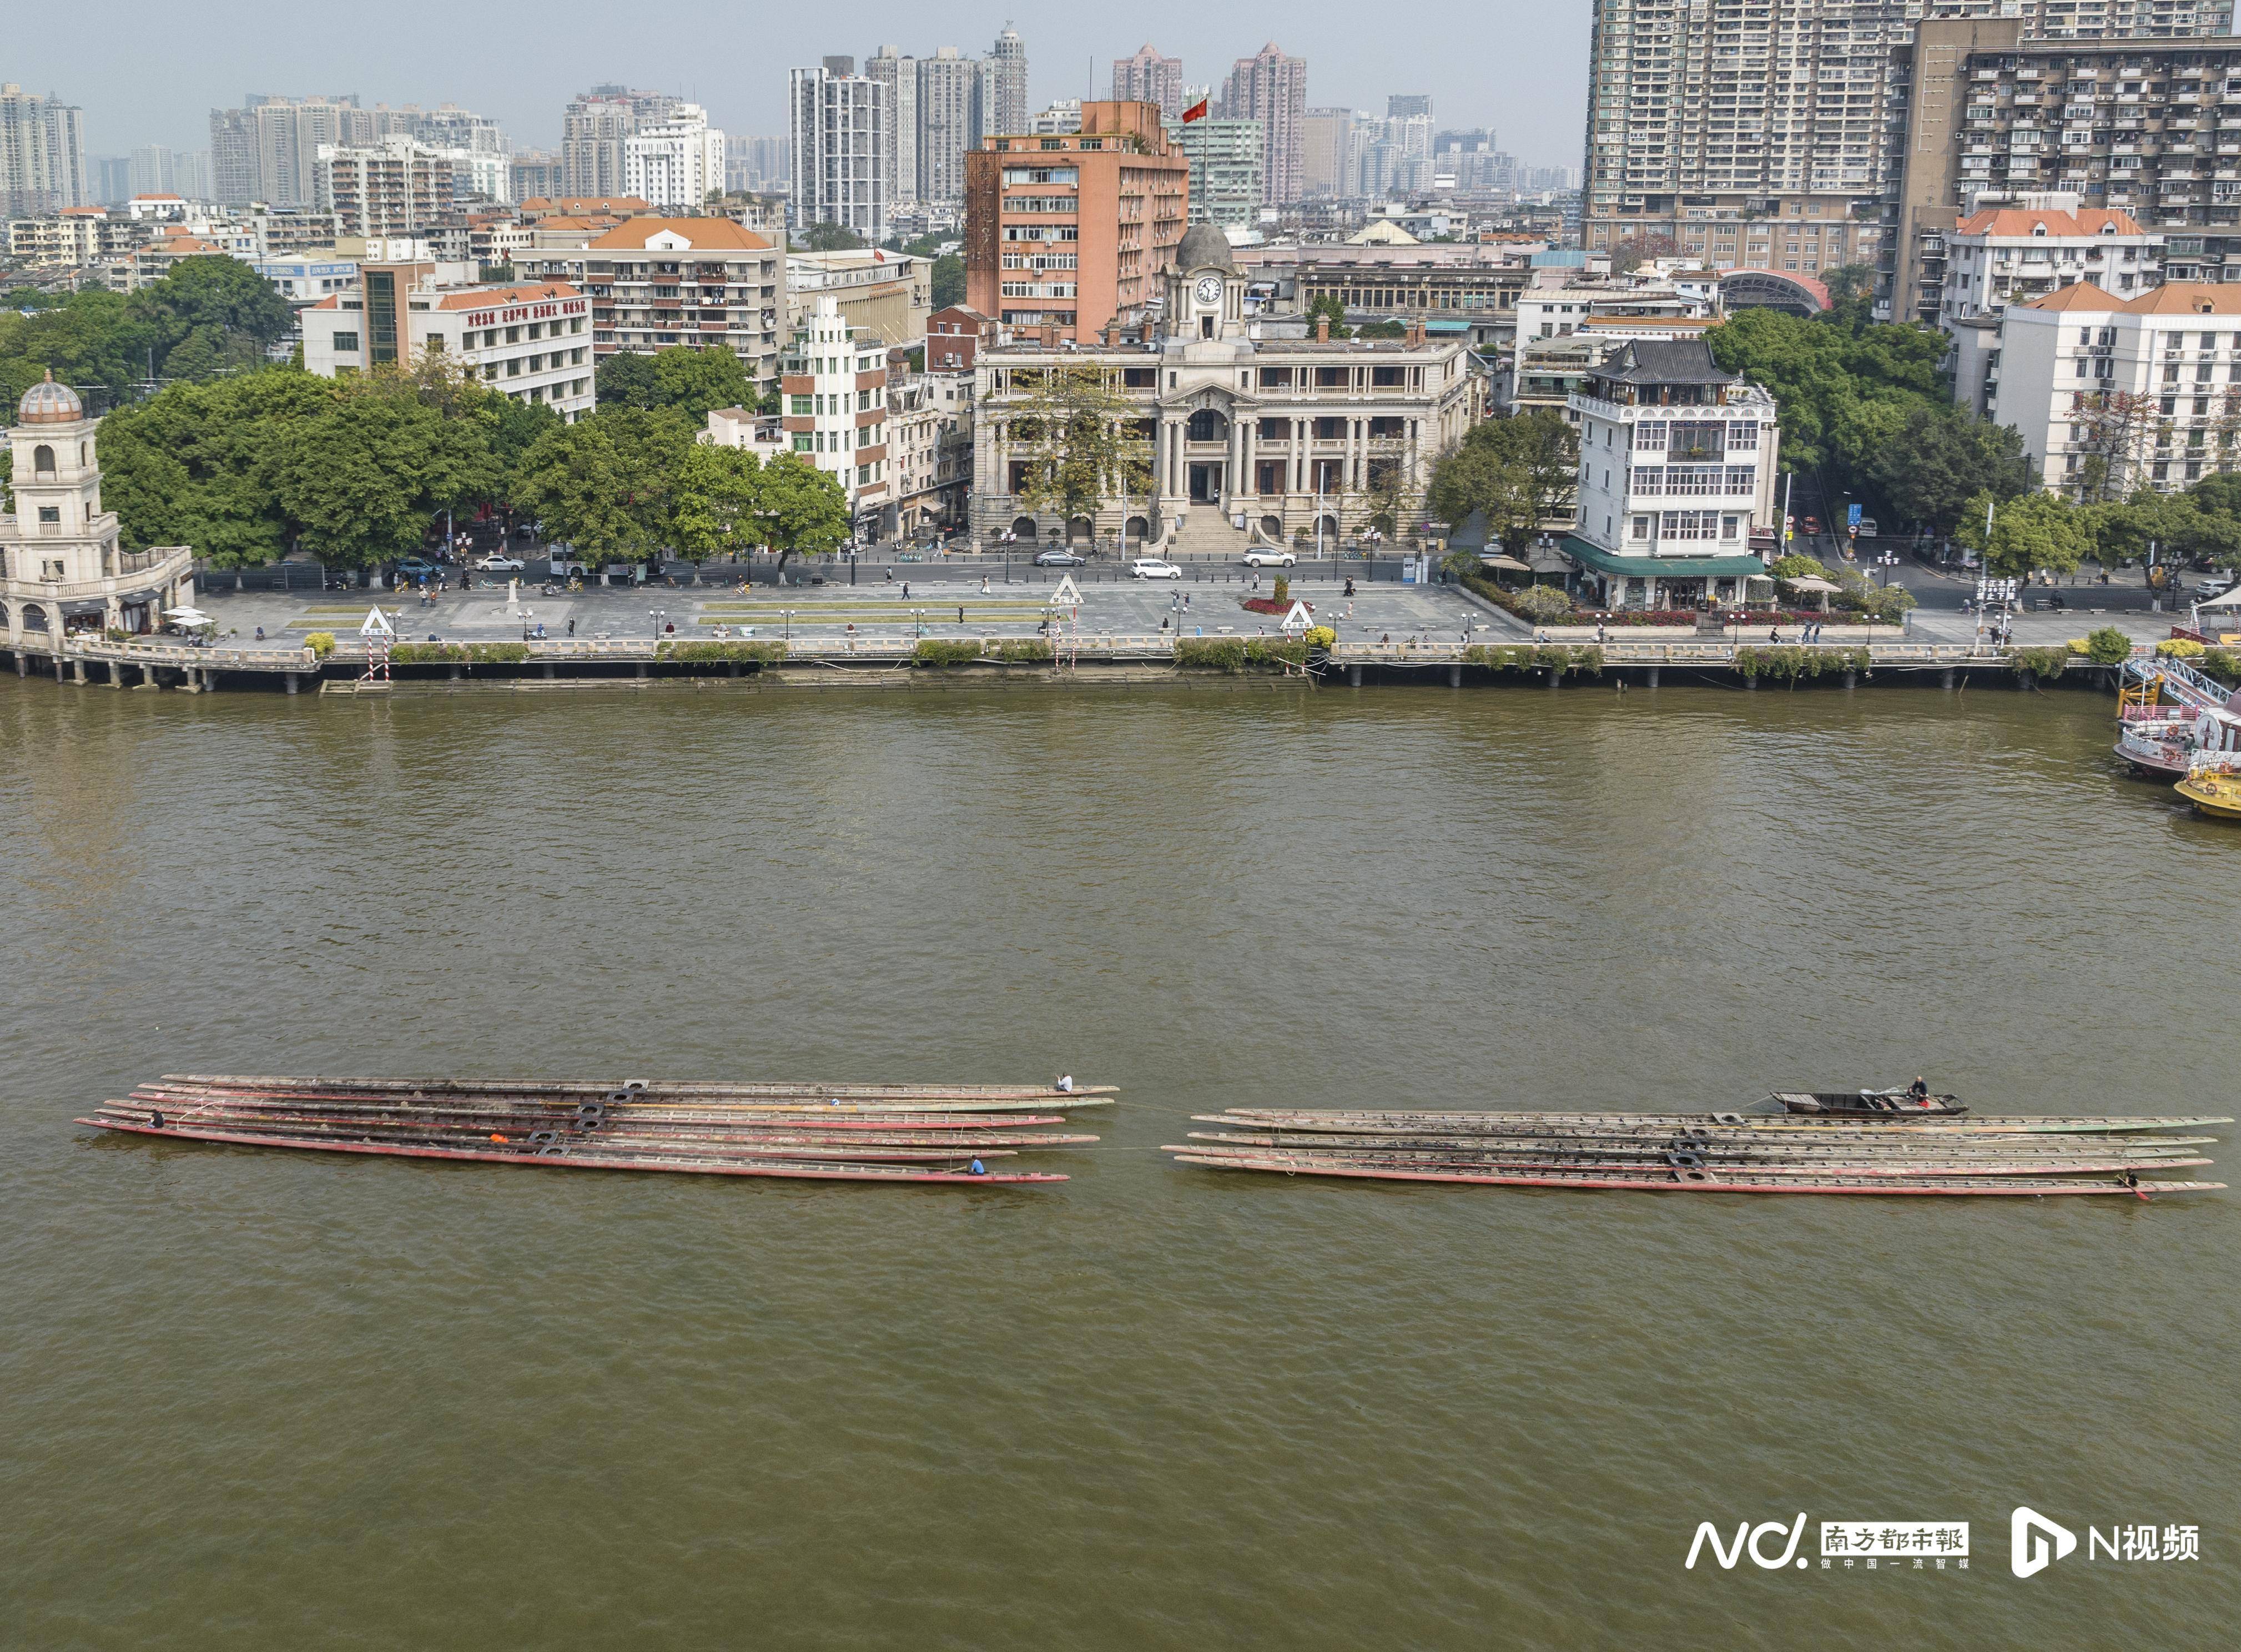 低调出巡，龙舟游过广州市区珠江河段往船厂装身待竞渡再起